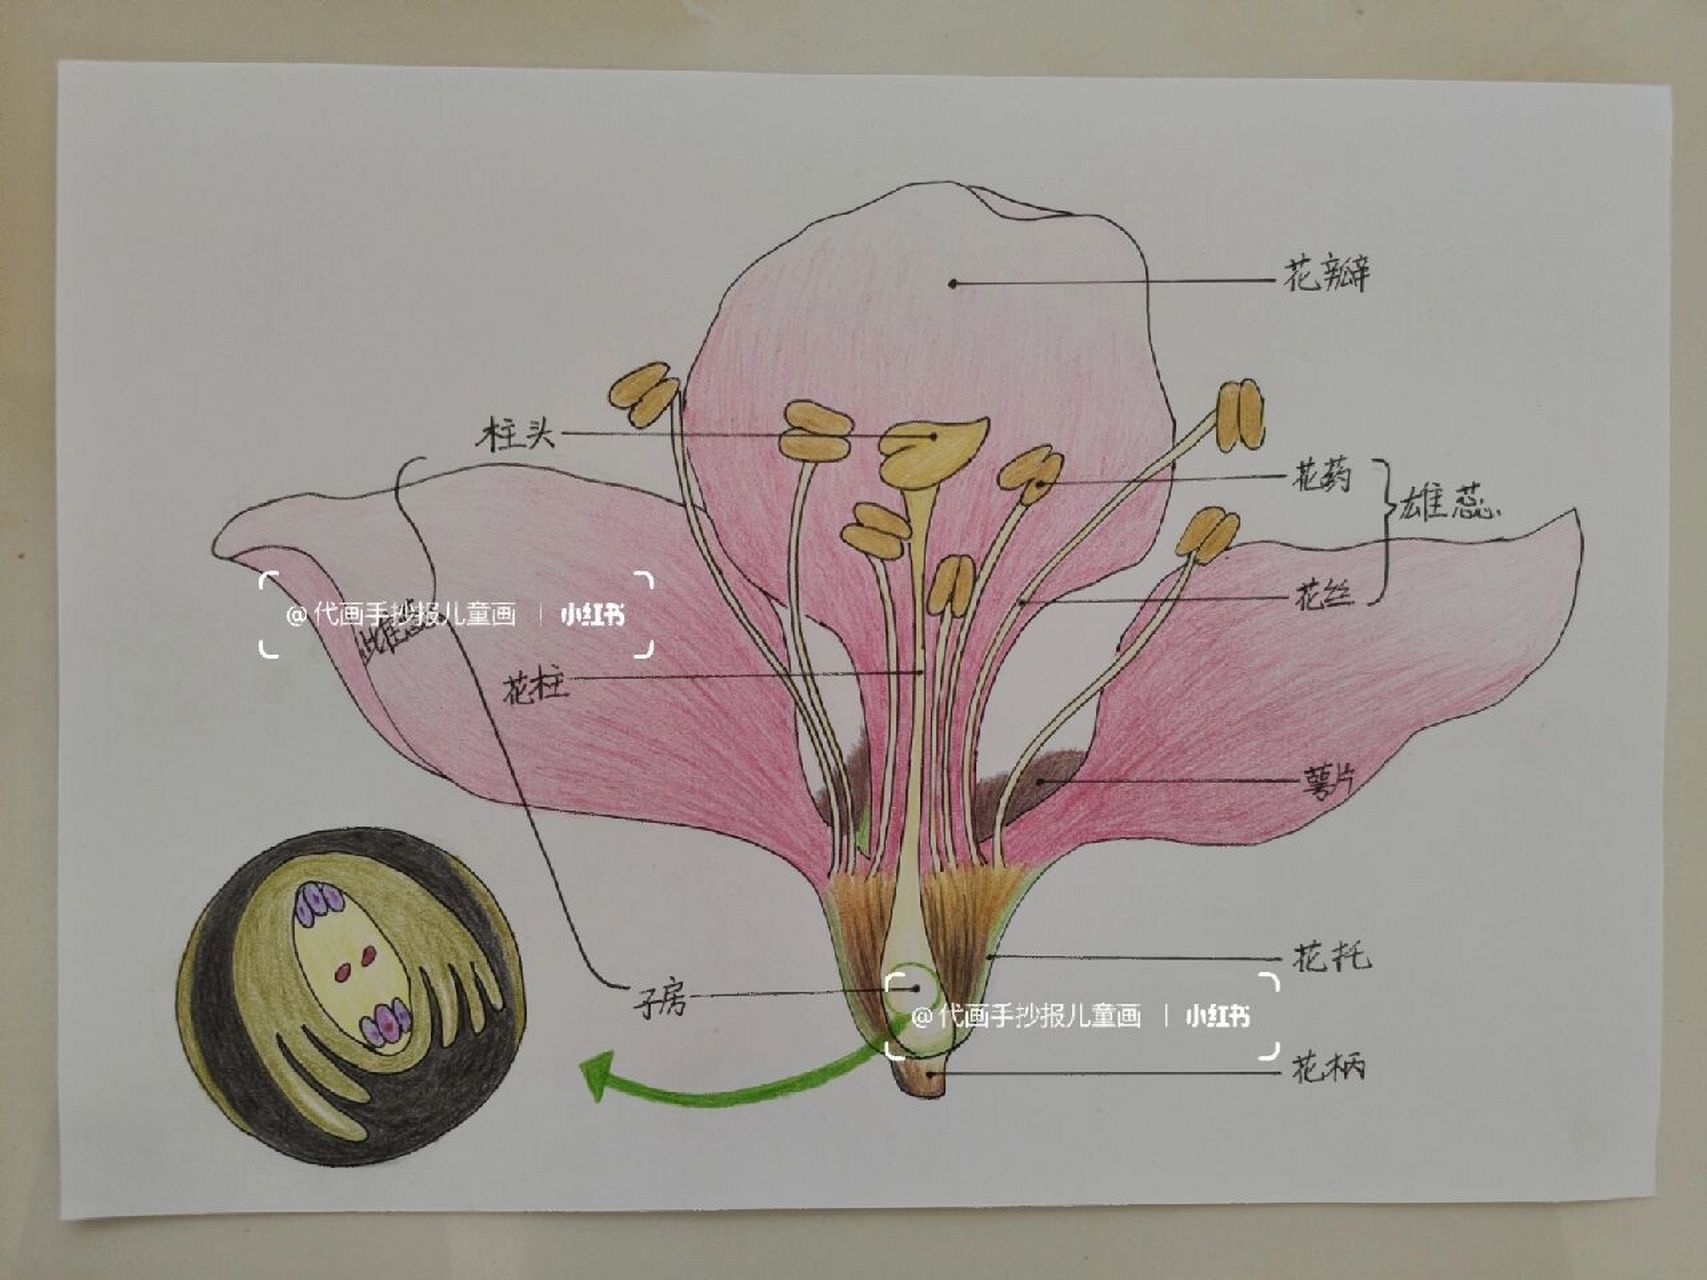 桃花结构示意图图片